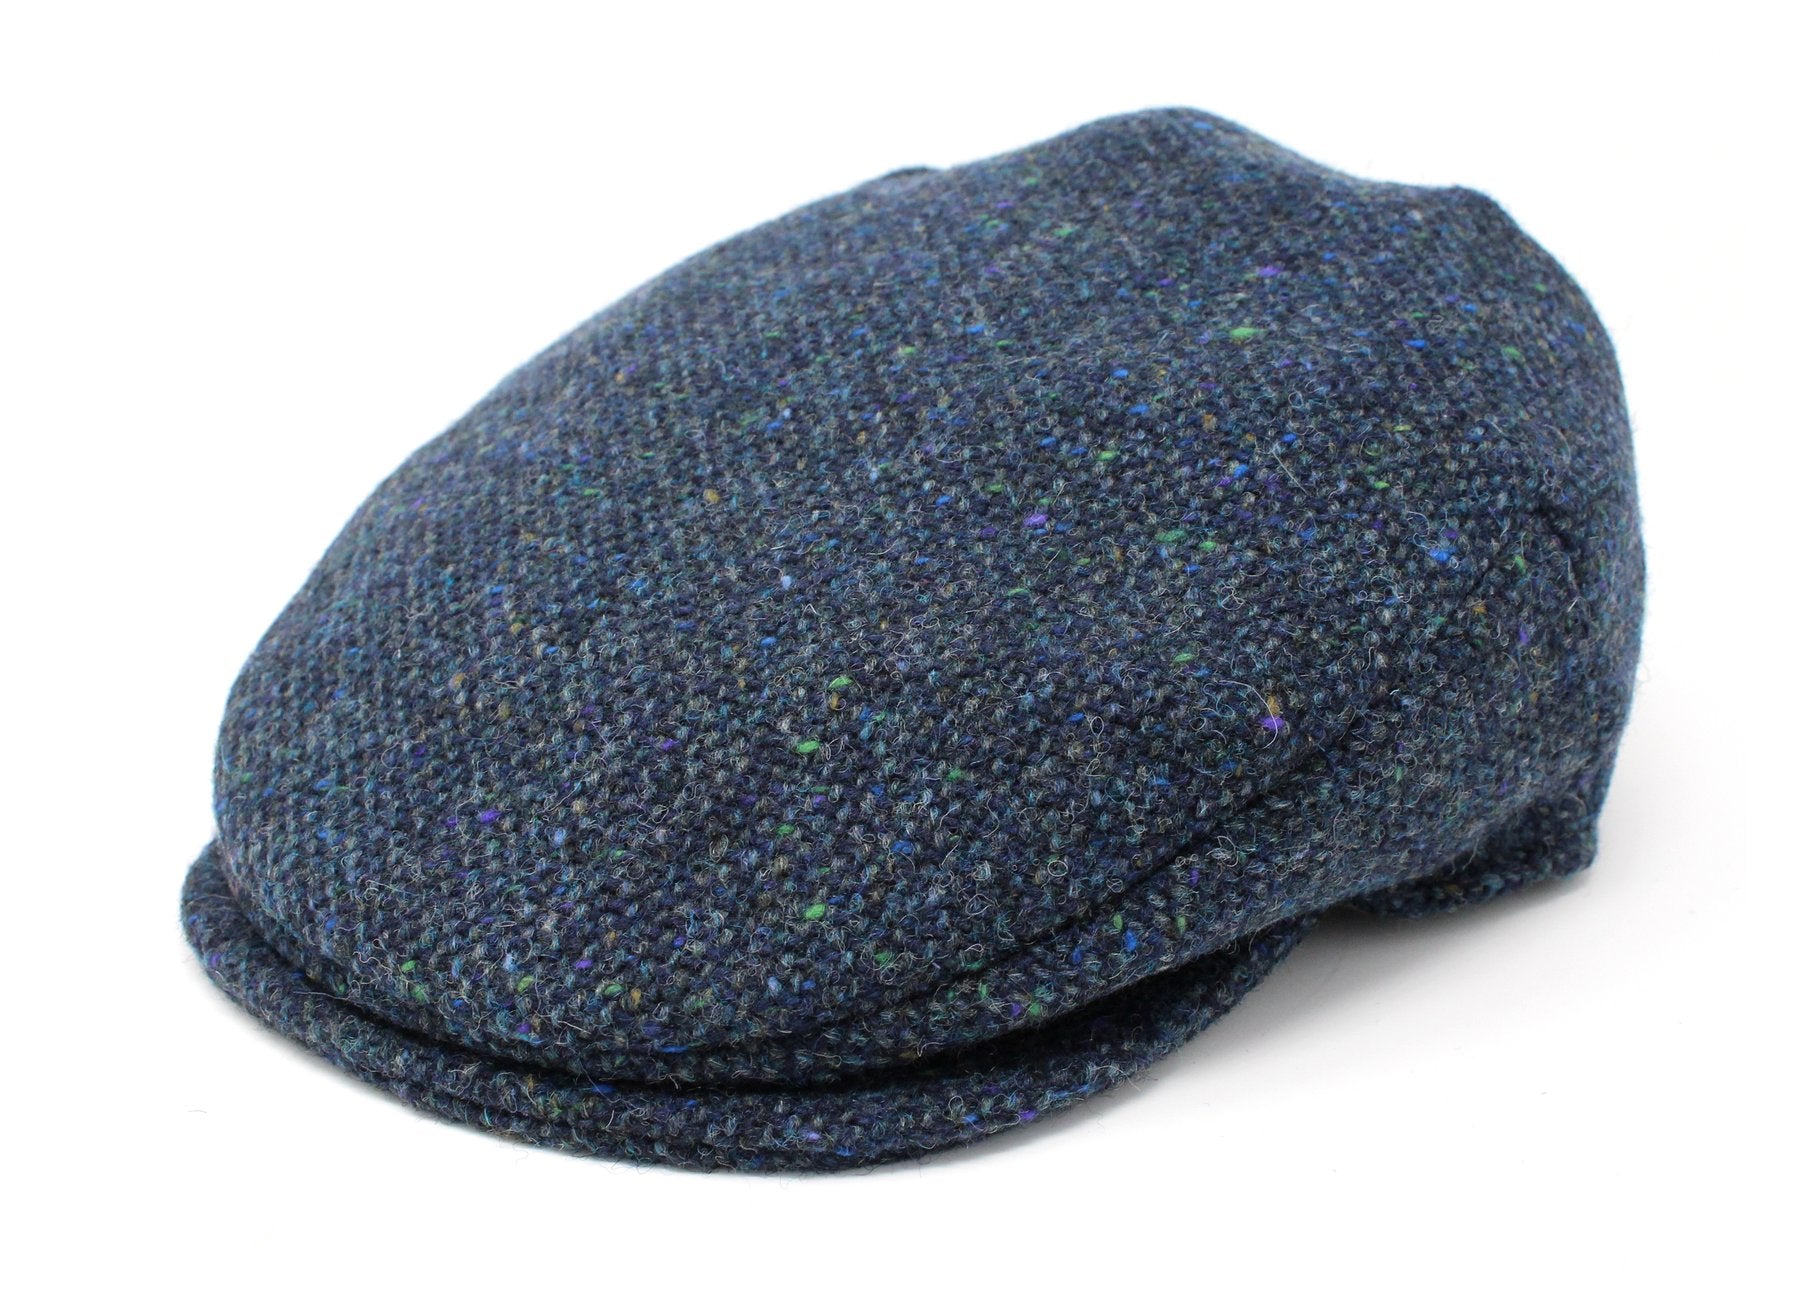 Tweed Vintage Flat Cap